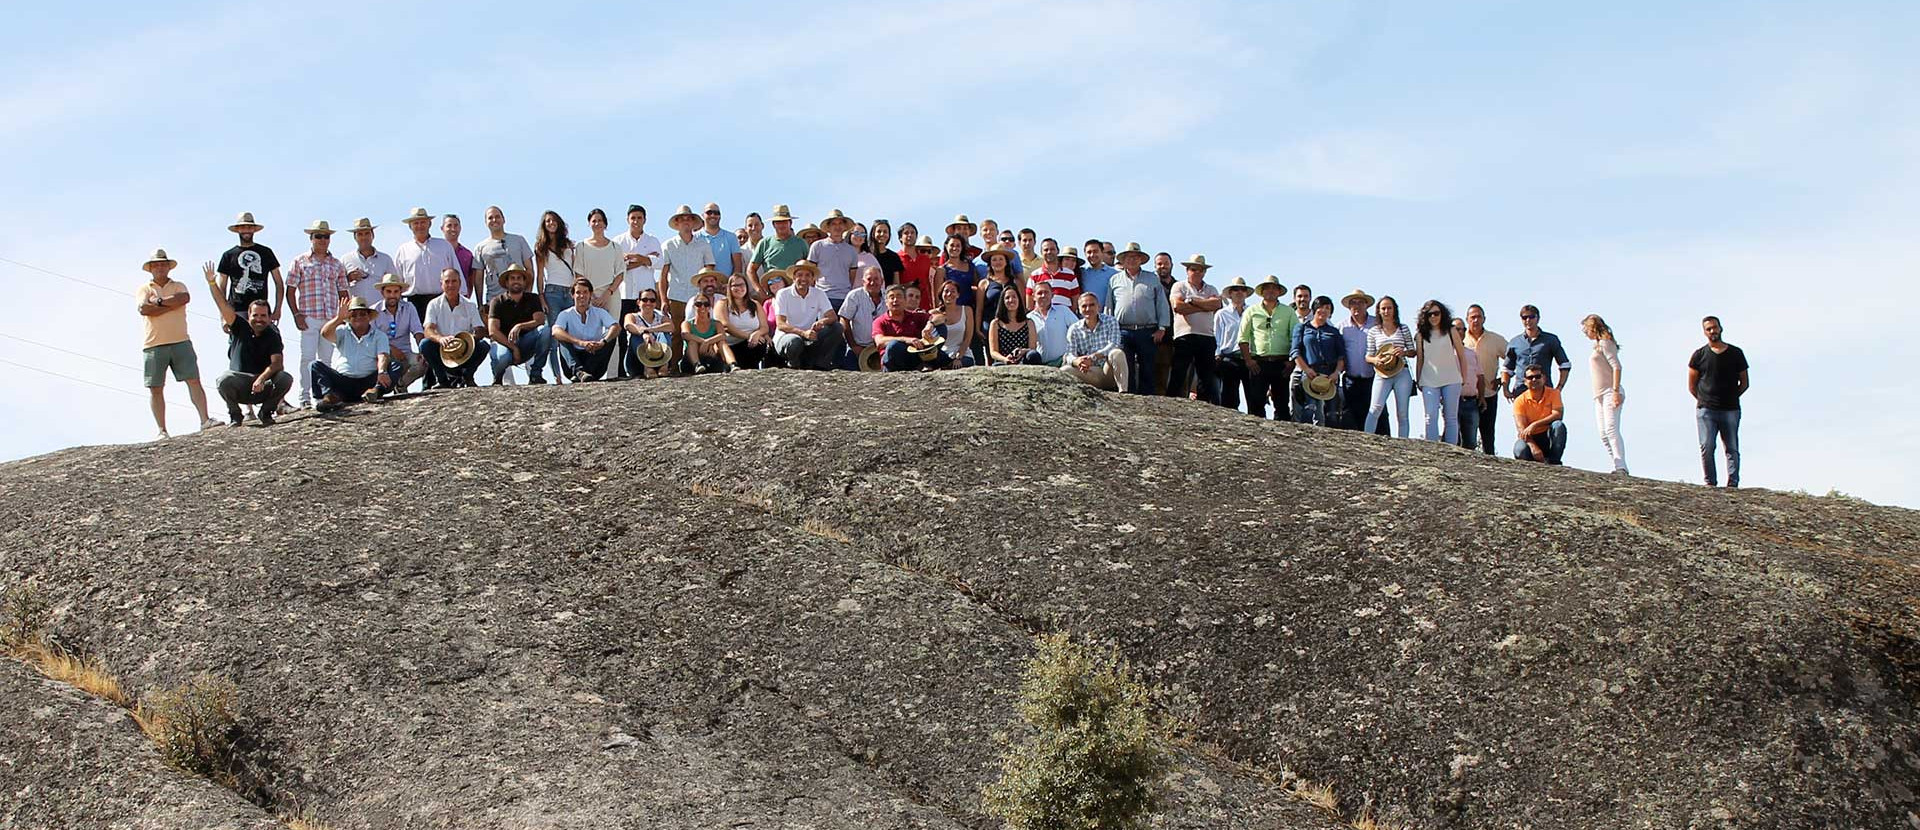 Gruppenfoto, das große Team ist auf einem Felsen versammelt